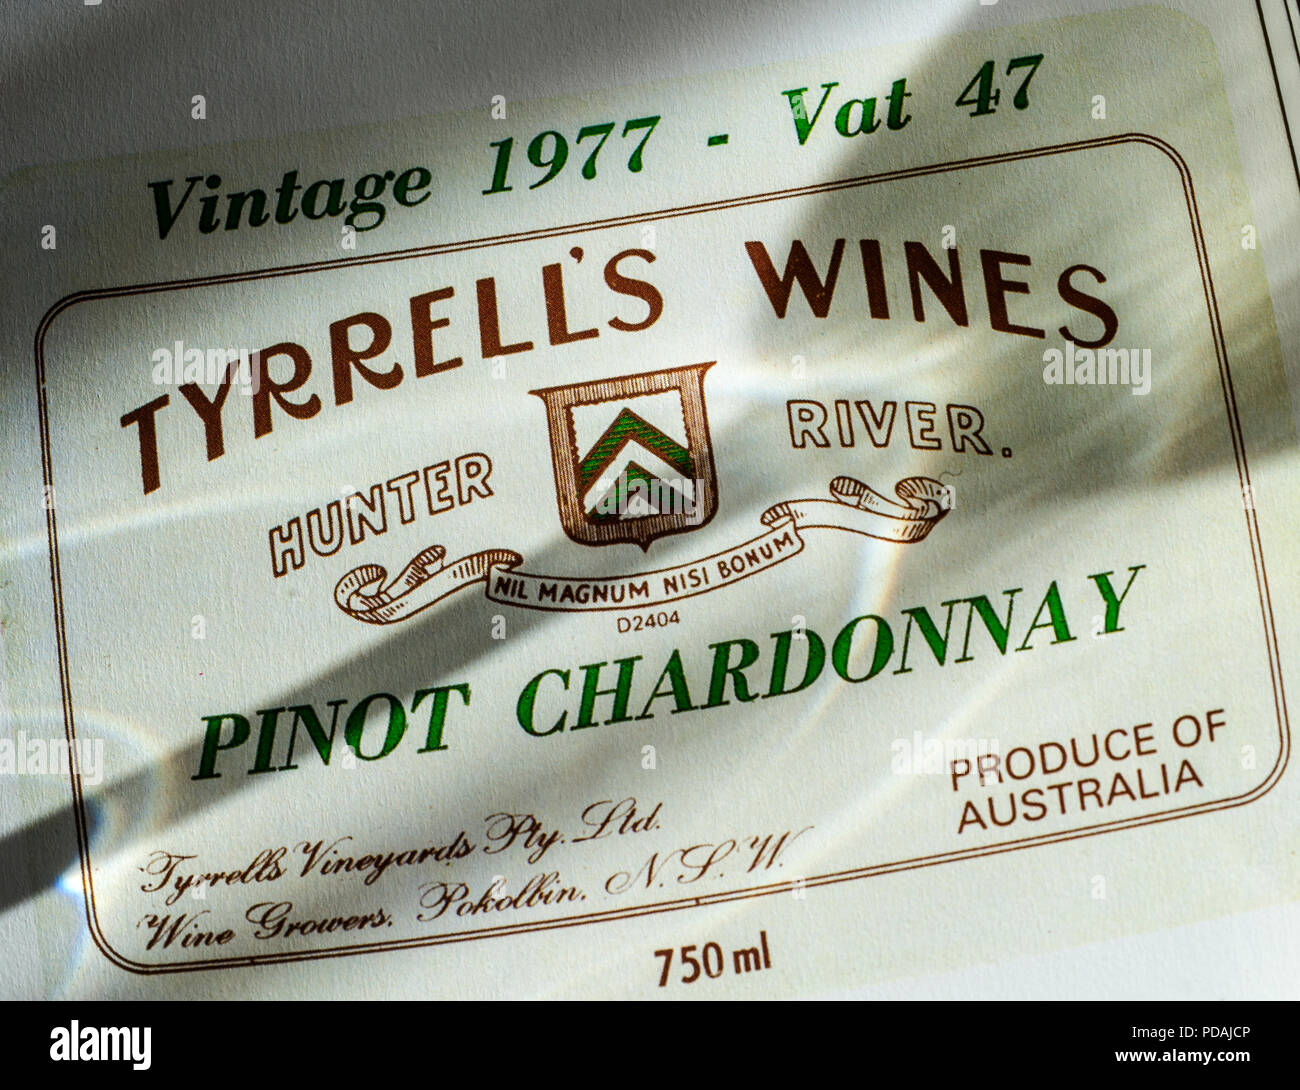 Der Tyrrell Weine Pinot Chardonnay ''''Flaschenetikett, Jahrgang 1997, MW 47, Hunter River Australien mit Schatten von Wein Tasting Glas auf Referenz label Stockfoto